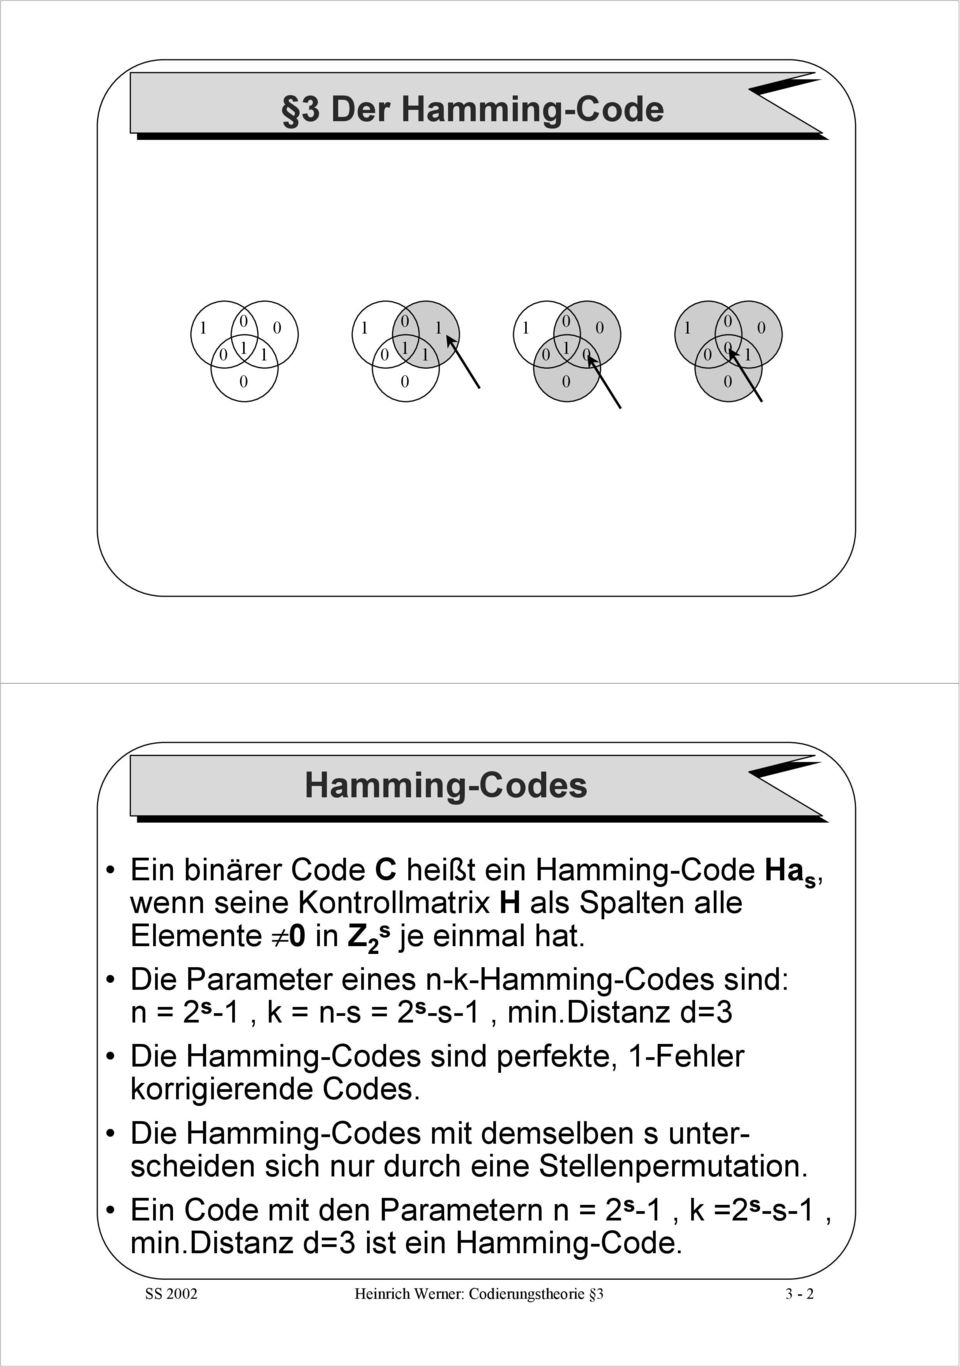 distanz d=3 Die Hamming-Codes sind perfekte, -Fehler korrigierende Codes.